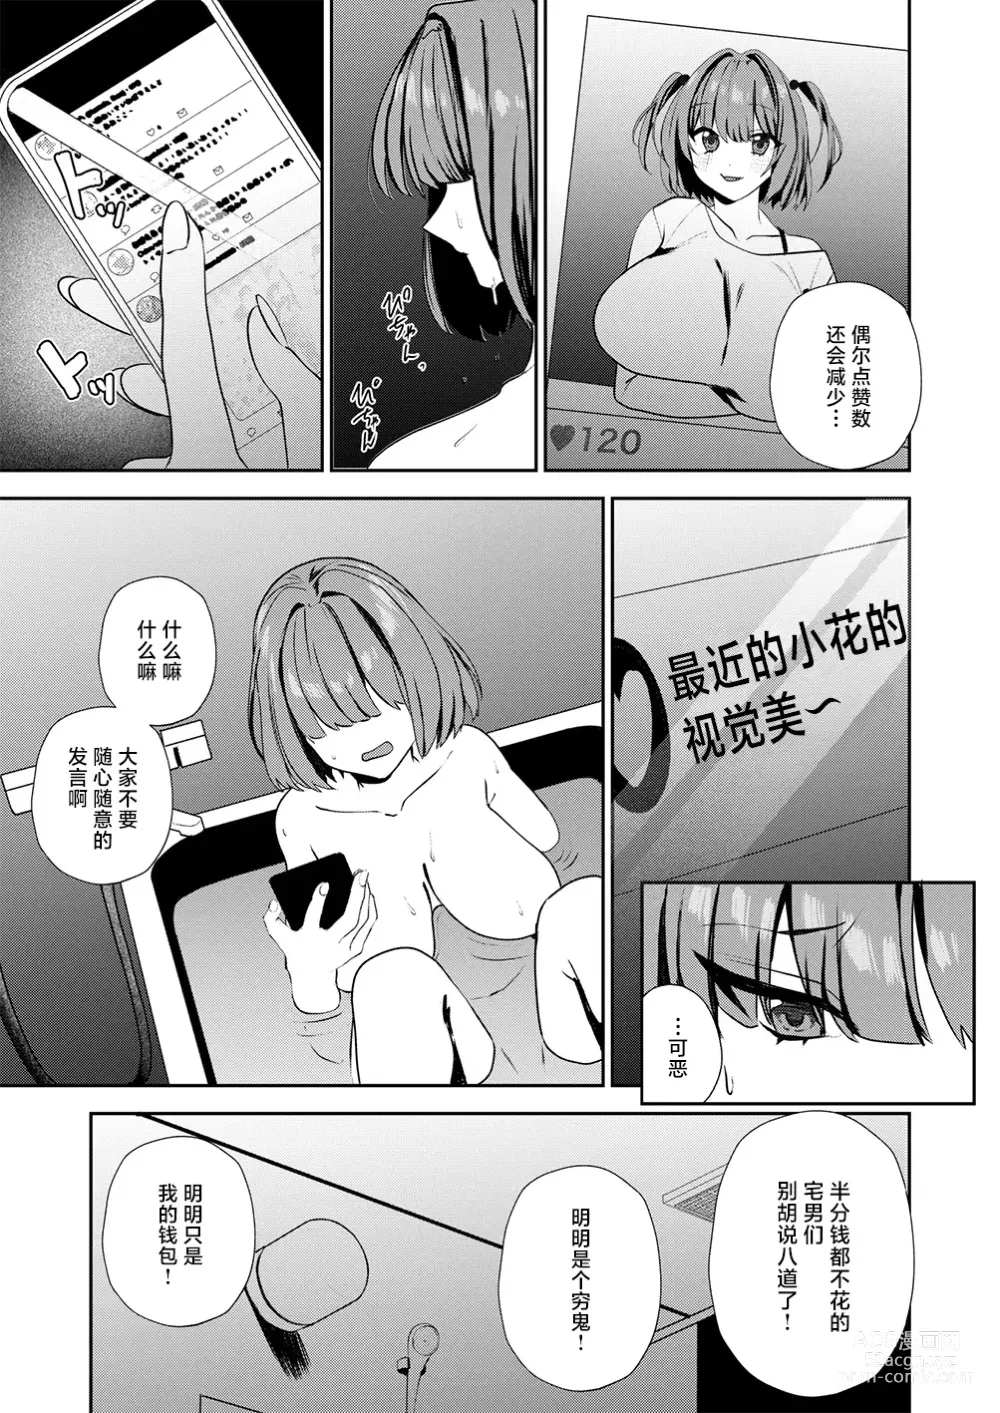 Page 3 of manga Motto Atashi o Oshite kure!